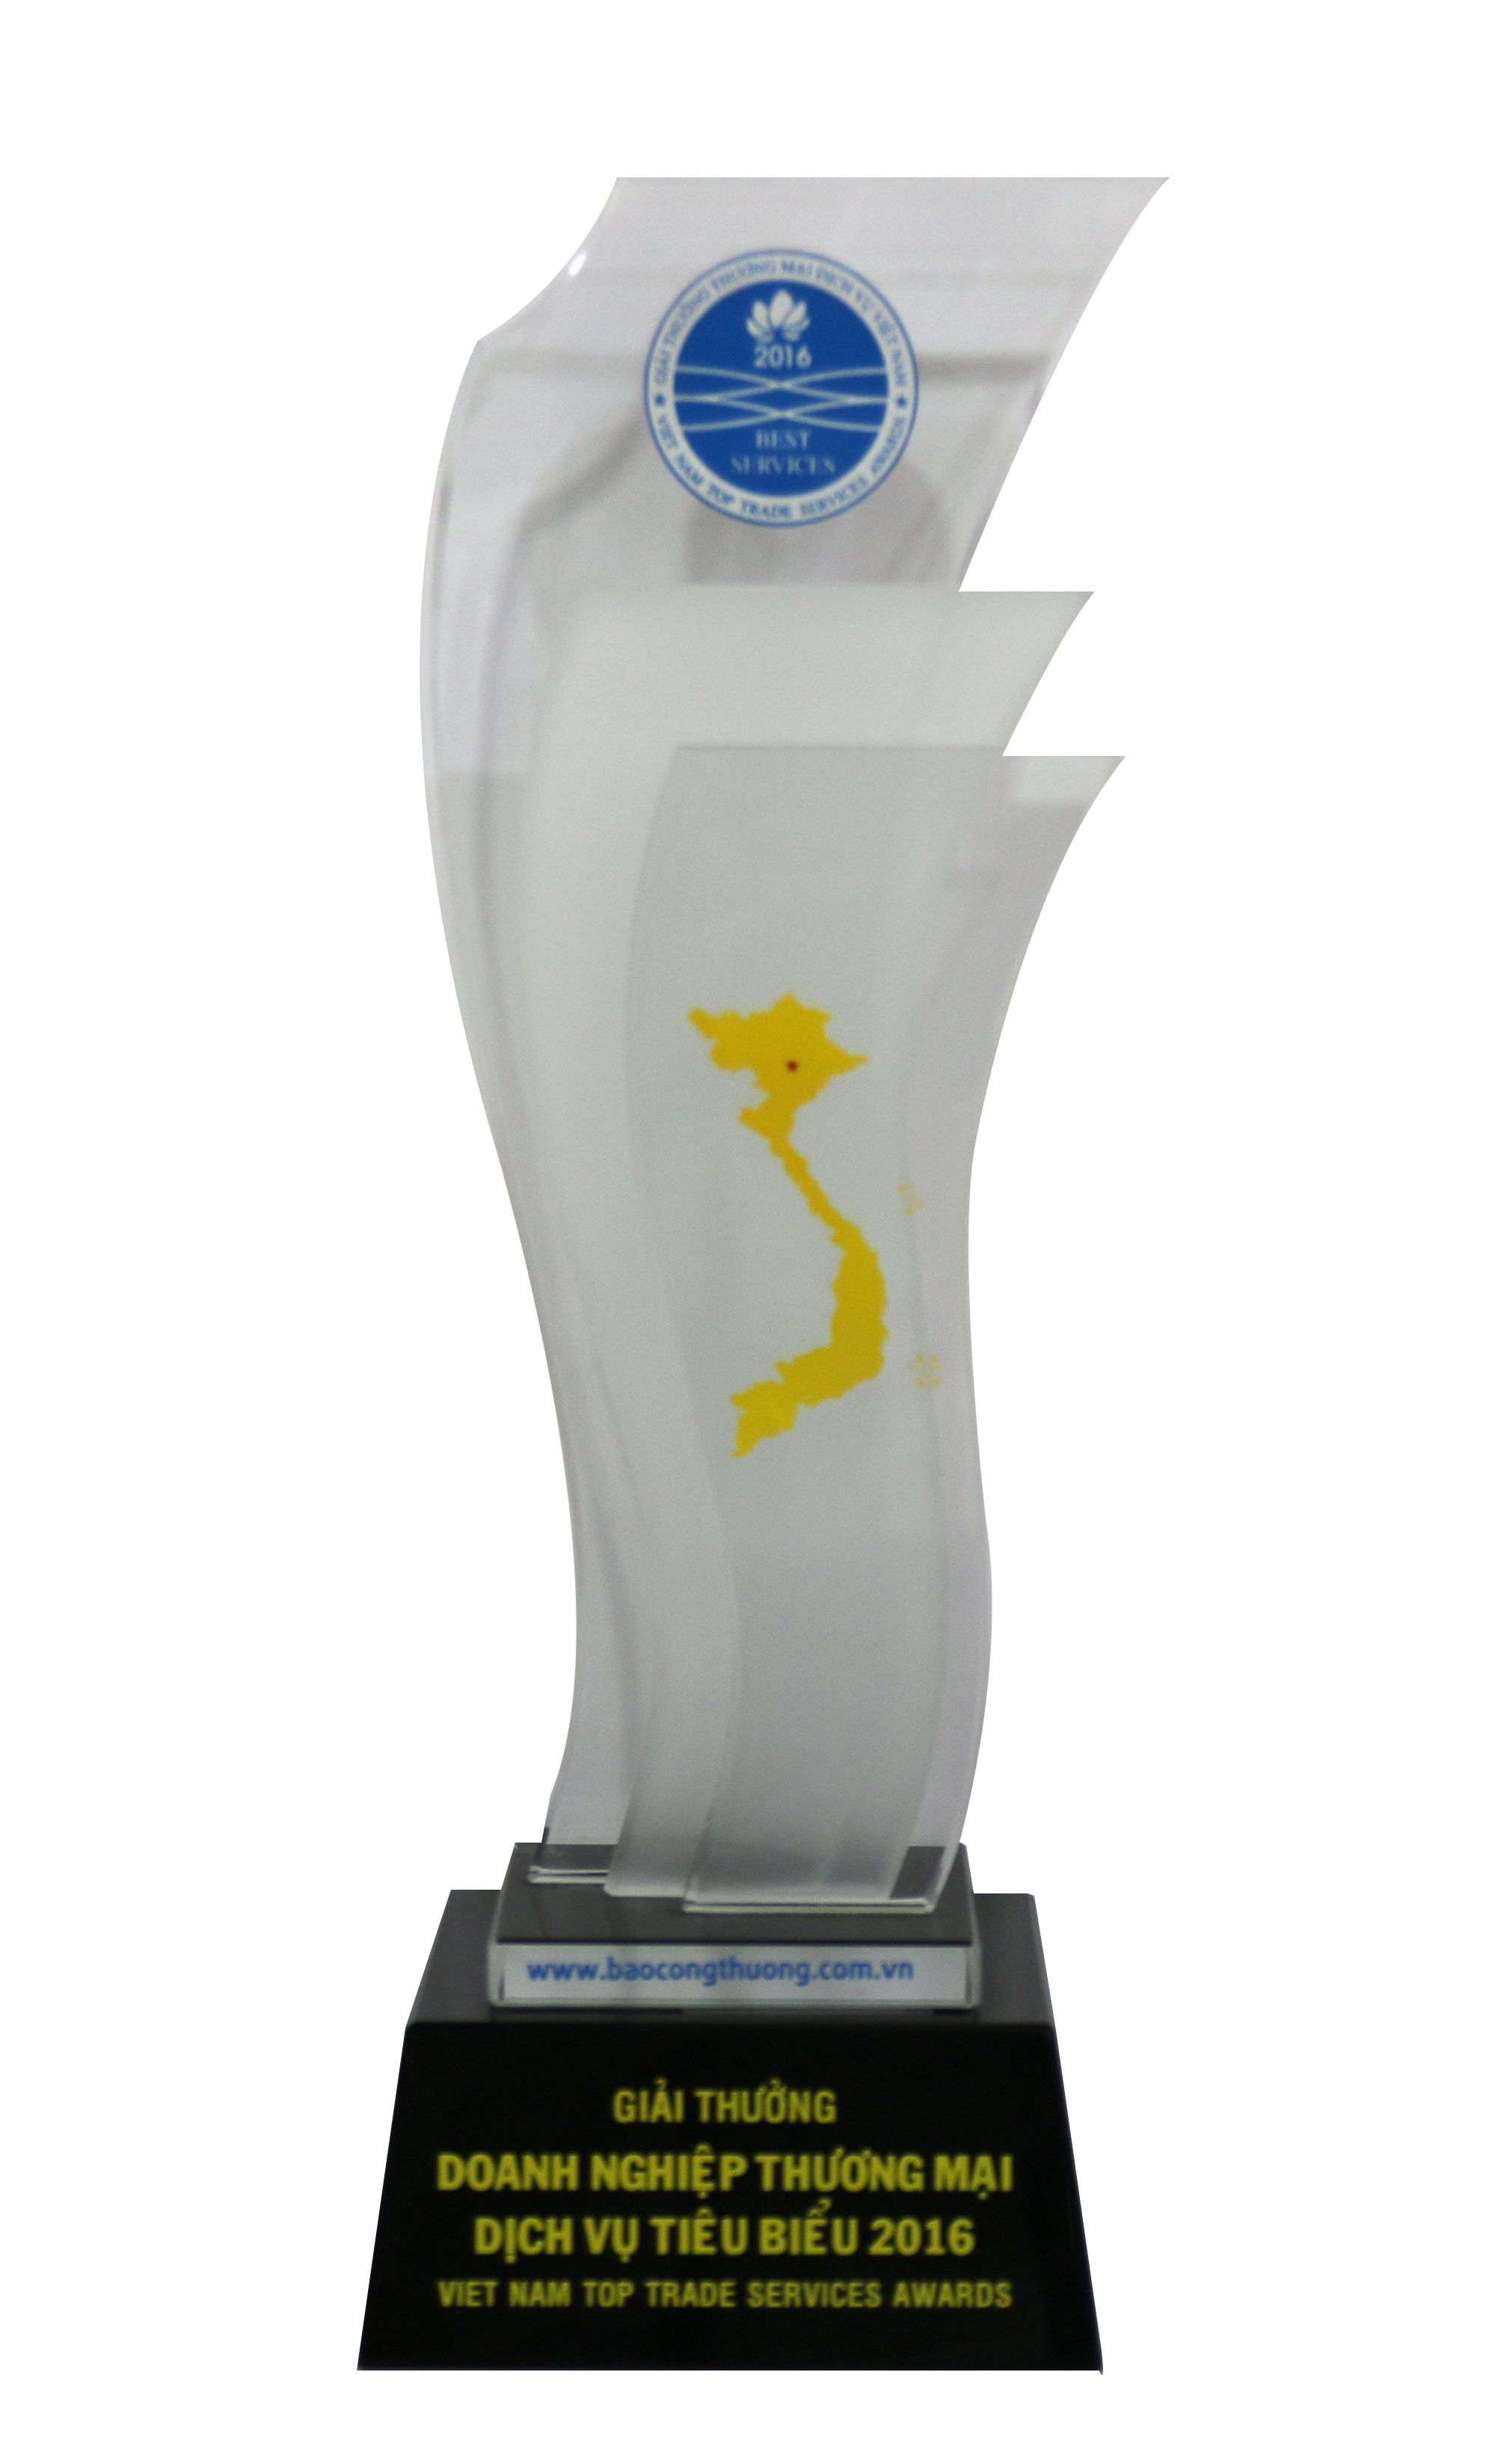 Giải thưởng doanh nghiệp thương mại dịch vụ tiêu biểu 2016